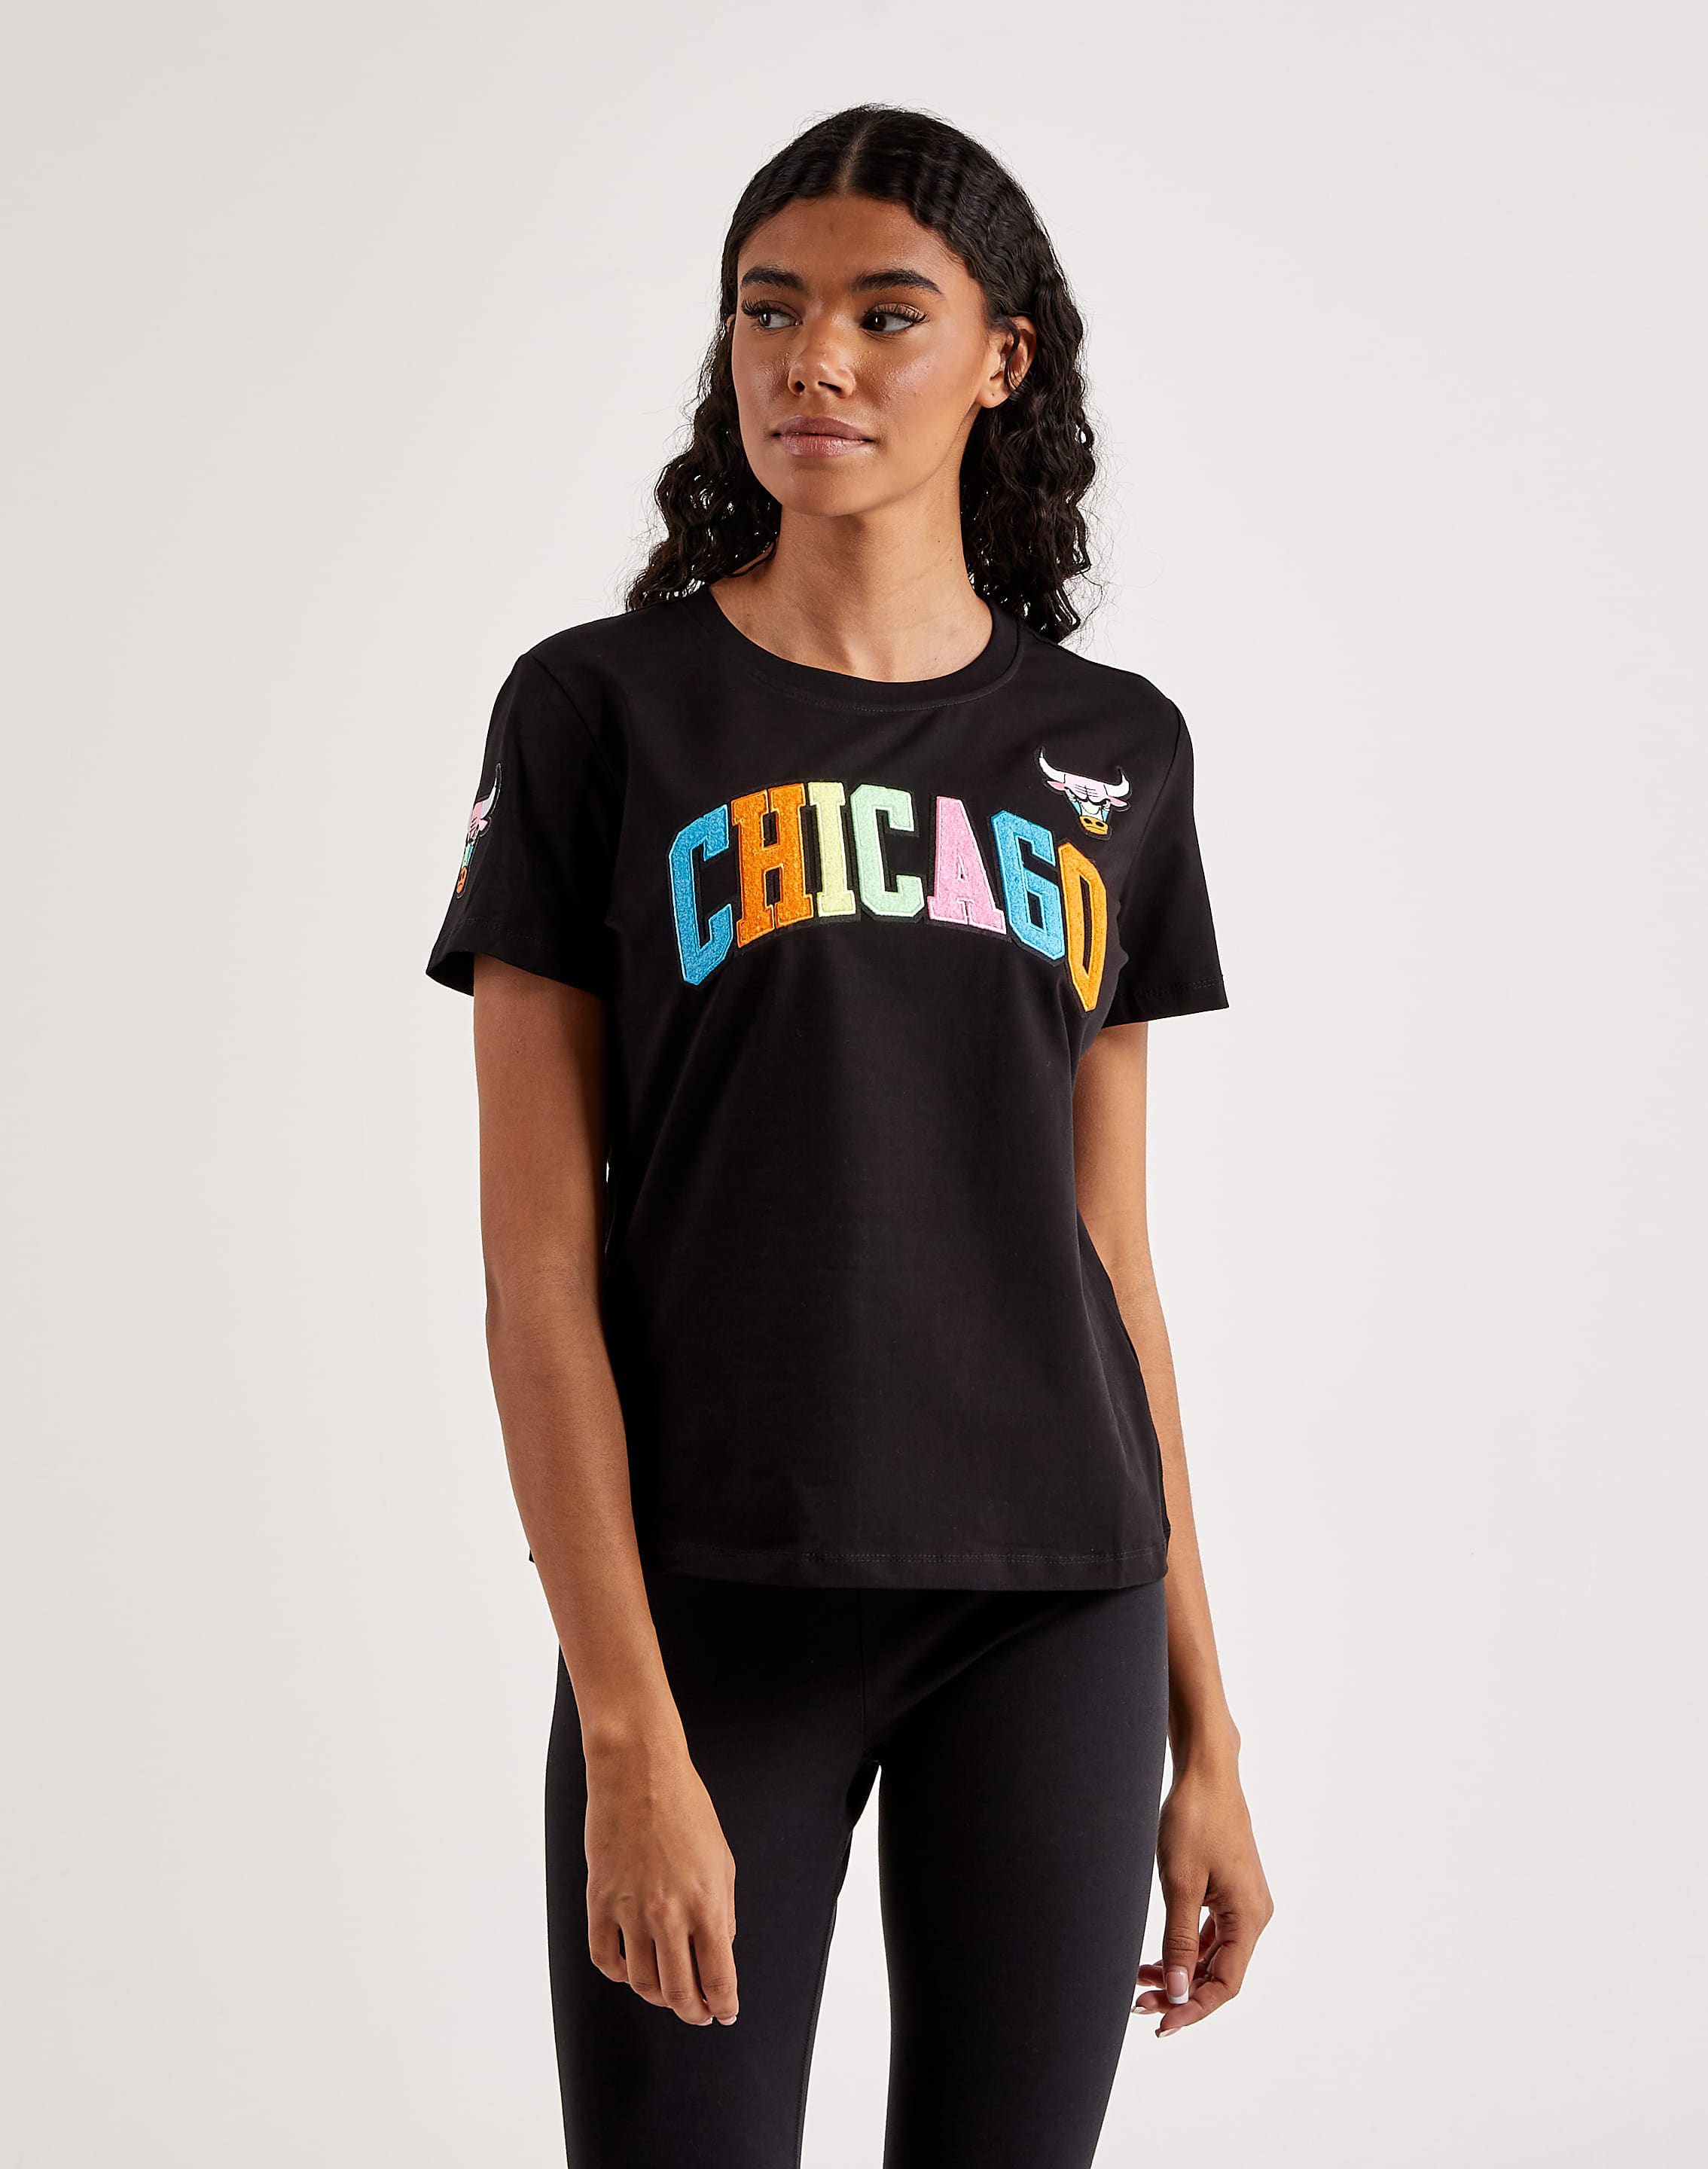 Chicago Bulls Neon Oversized Black T-Shirt